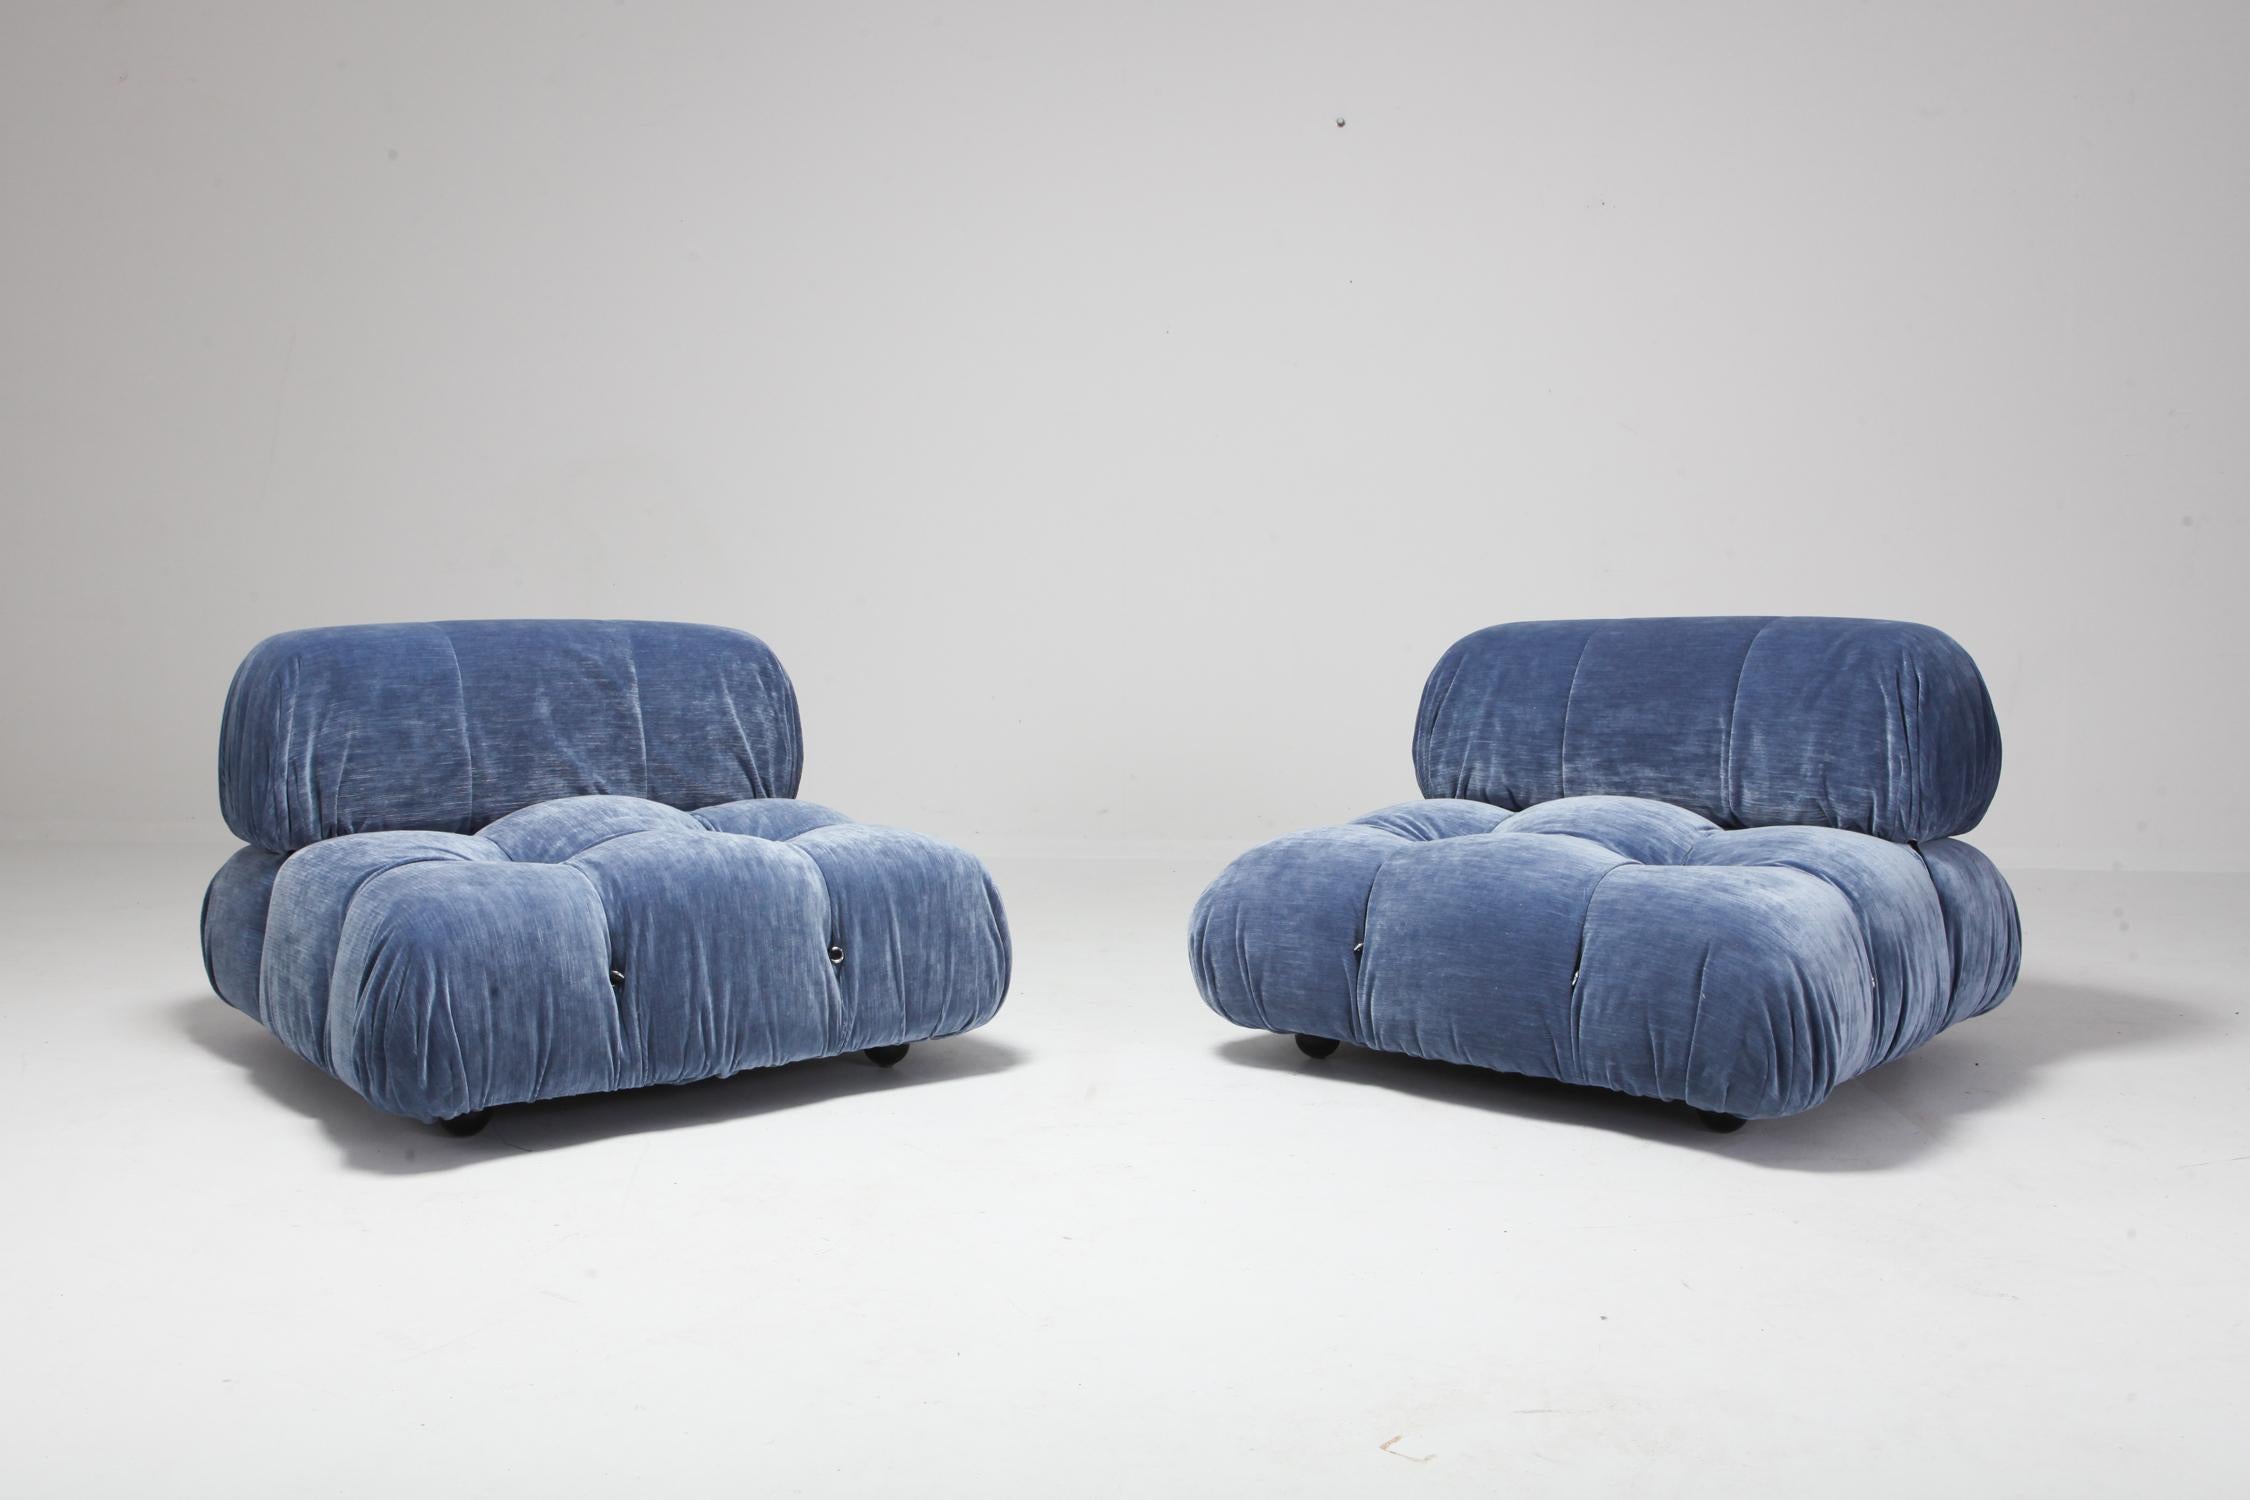 Postmoderne Sessel von Mario Bellini für B&B Italia
Neu gepolstert mit blauem Baumwollsamt.

Wir haben einen fachkundigen Polsterservice im Haus.
Wir können auf alle Ihre Bedürfnisse eingehen.

Wenden Sie sich an uns, wenn Sie Fragen haben.





 